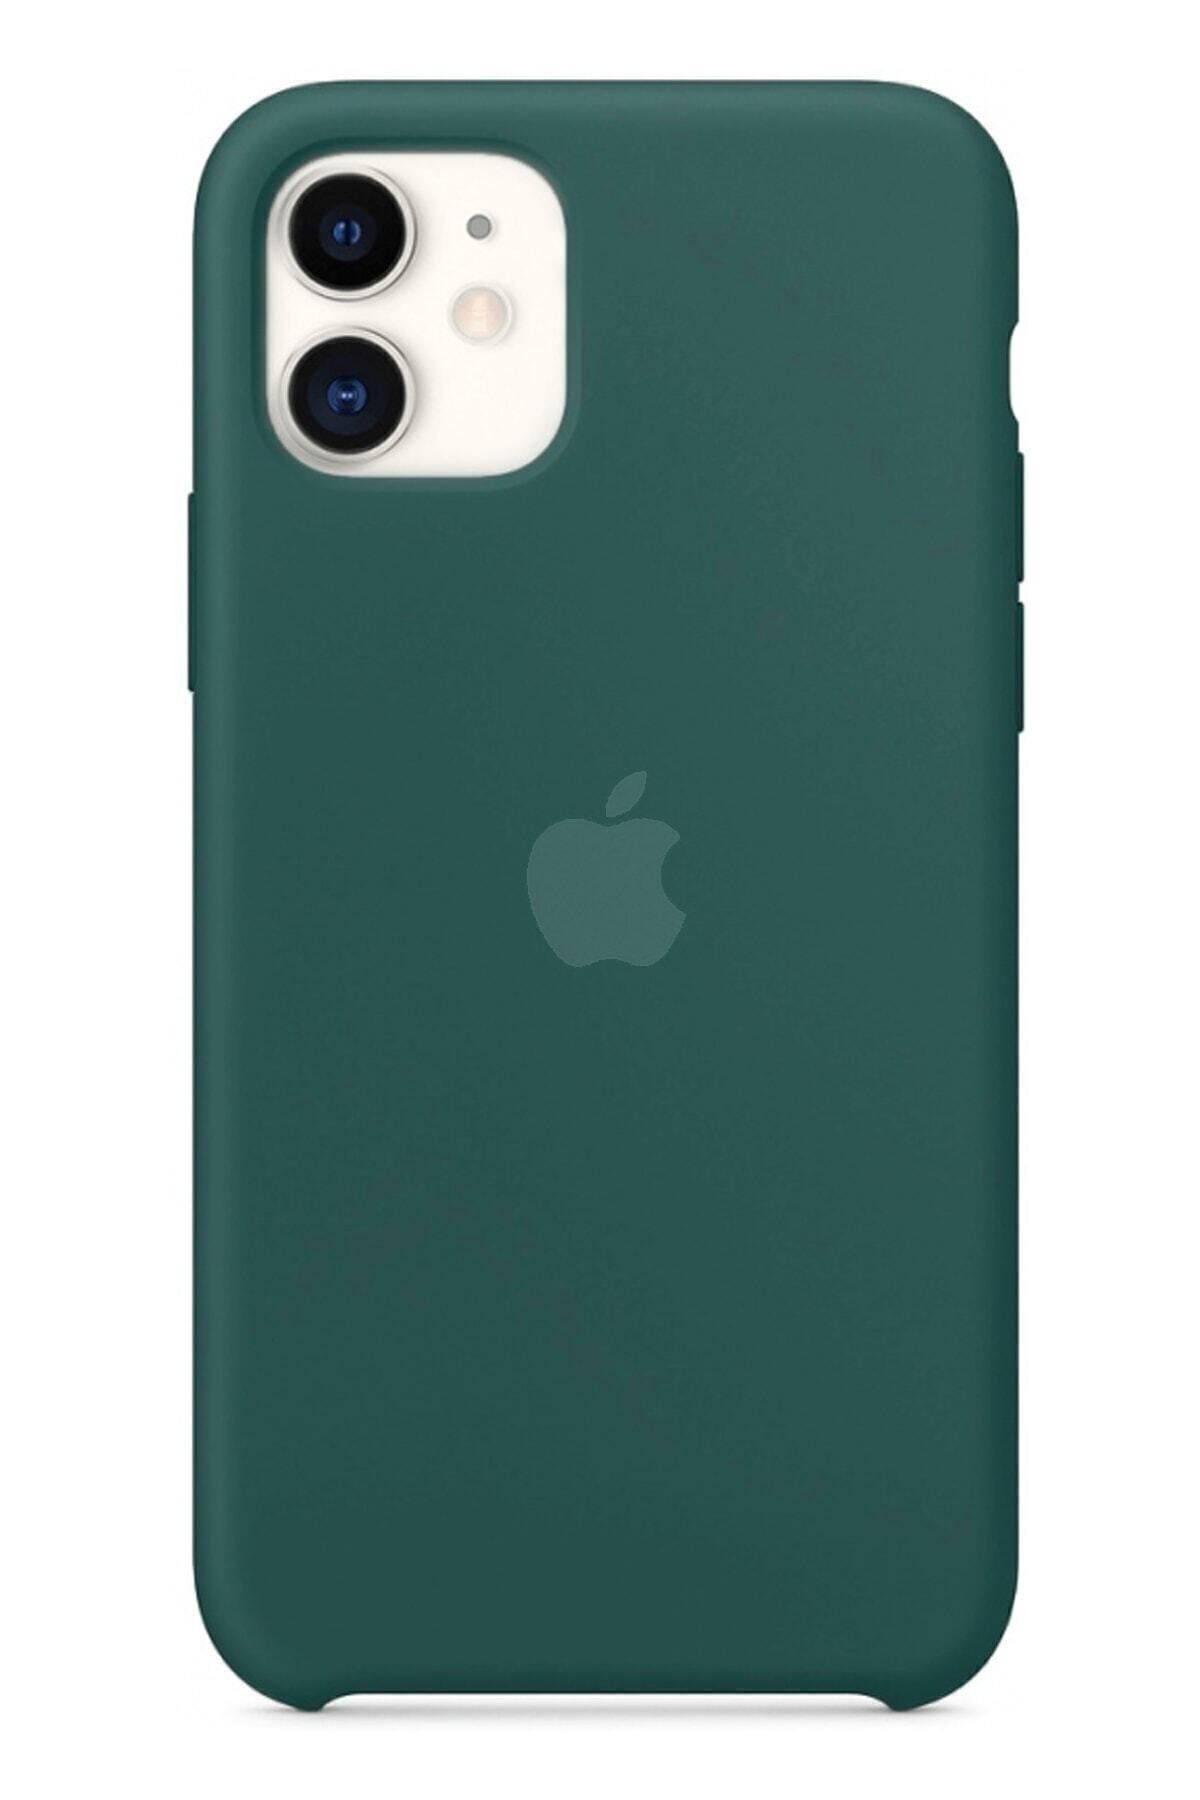 Ebotek Iphone 11 Silikon Kılıf Çam Yeşil Uyumlu